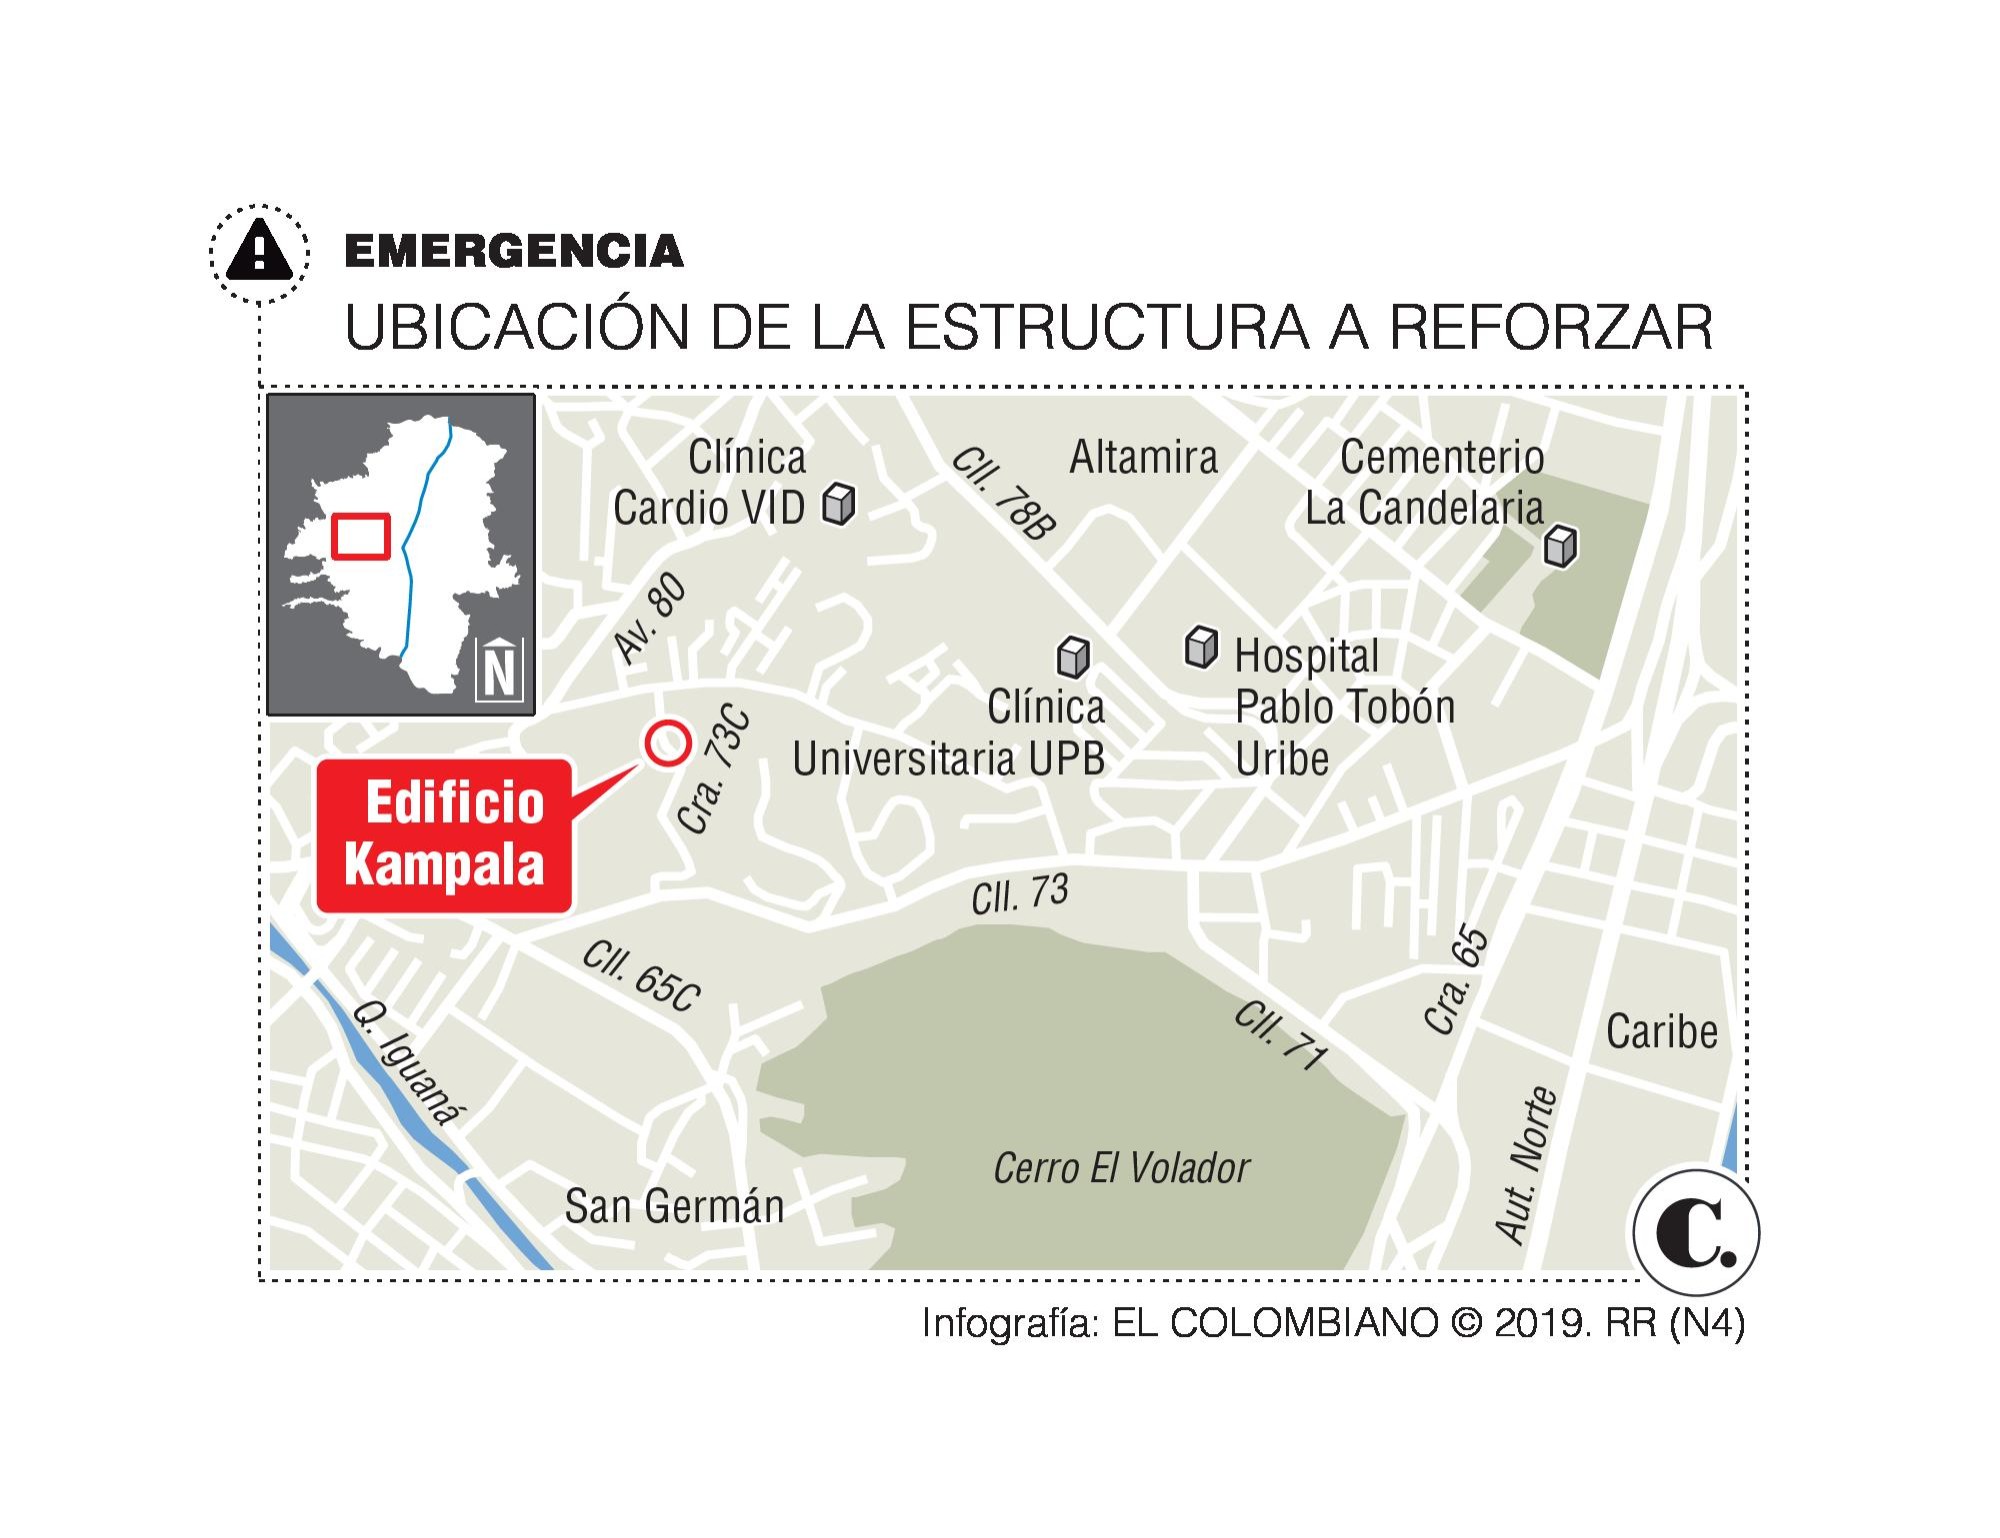 Kampala, otro edificio evacuado en Medellín